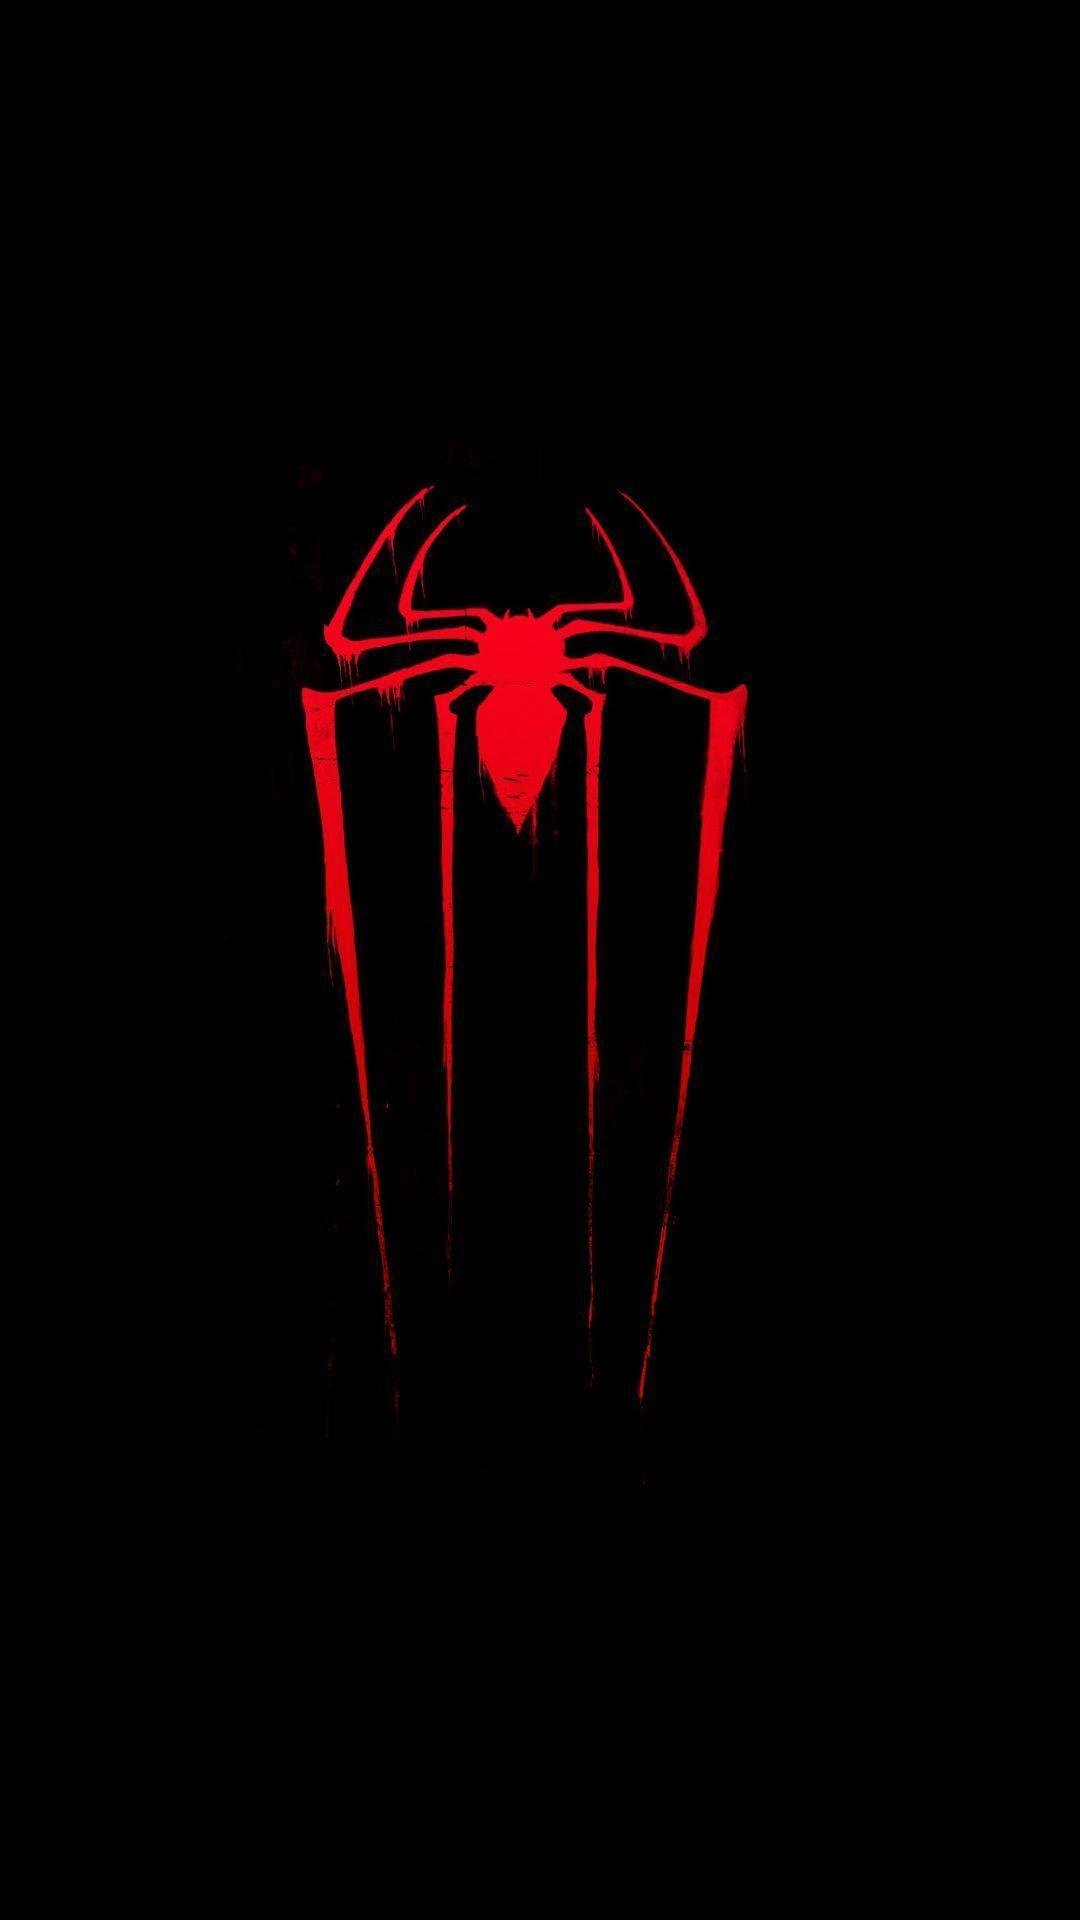 Spider man - logo